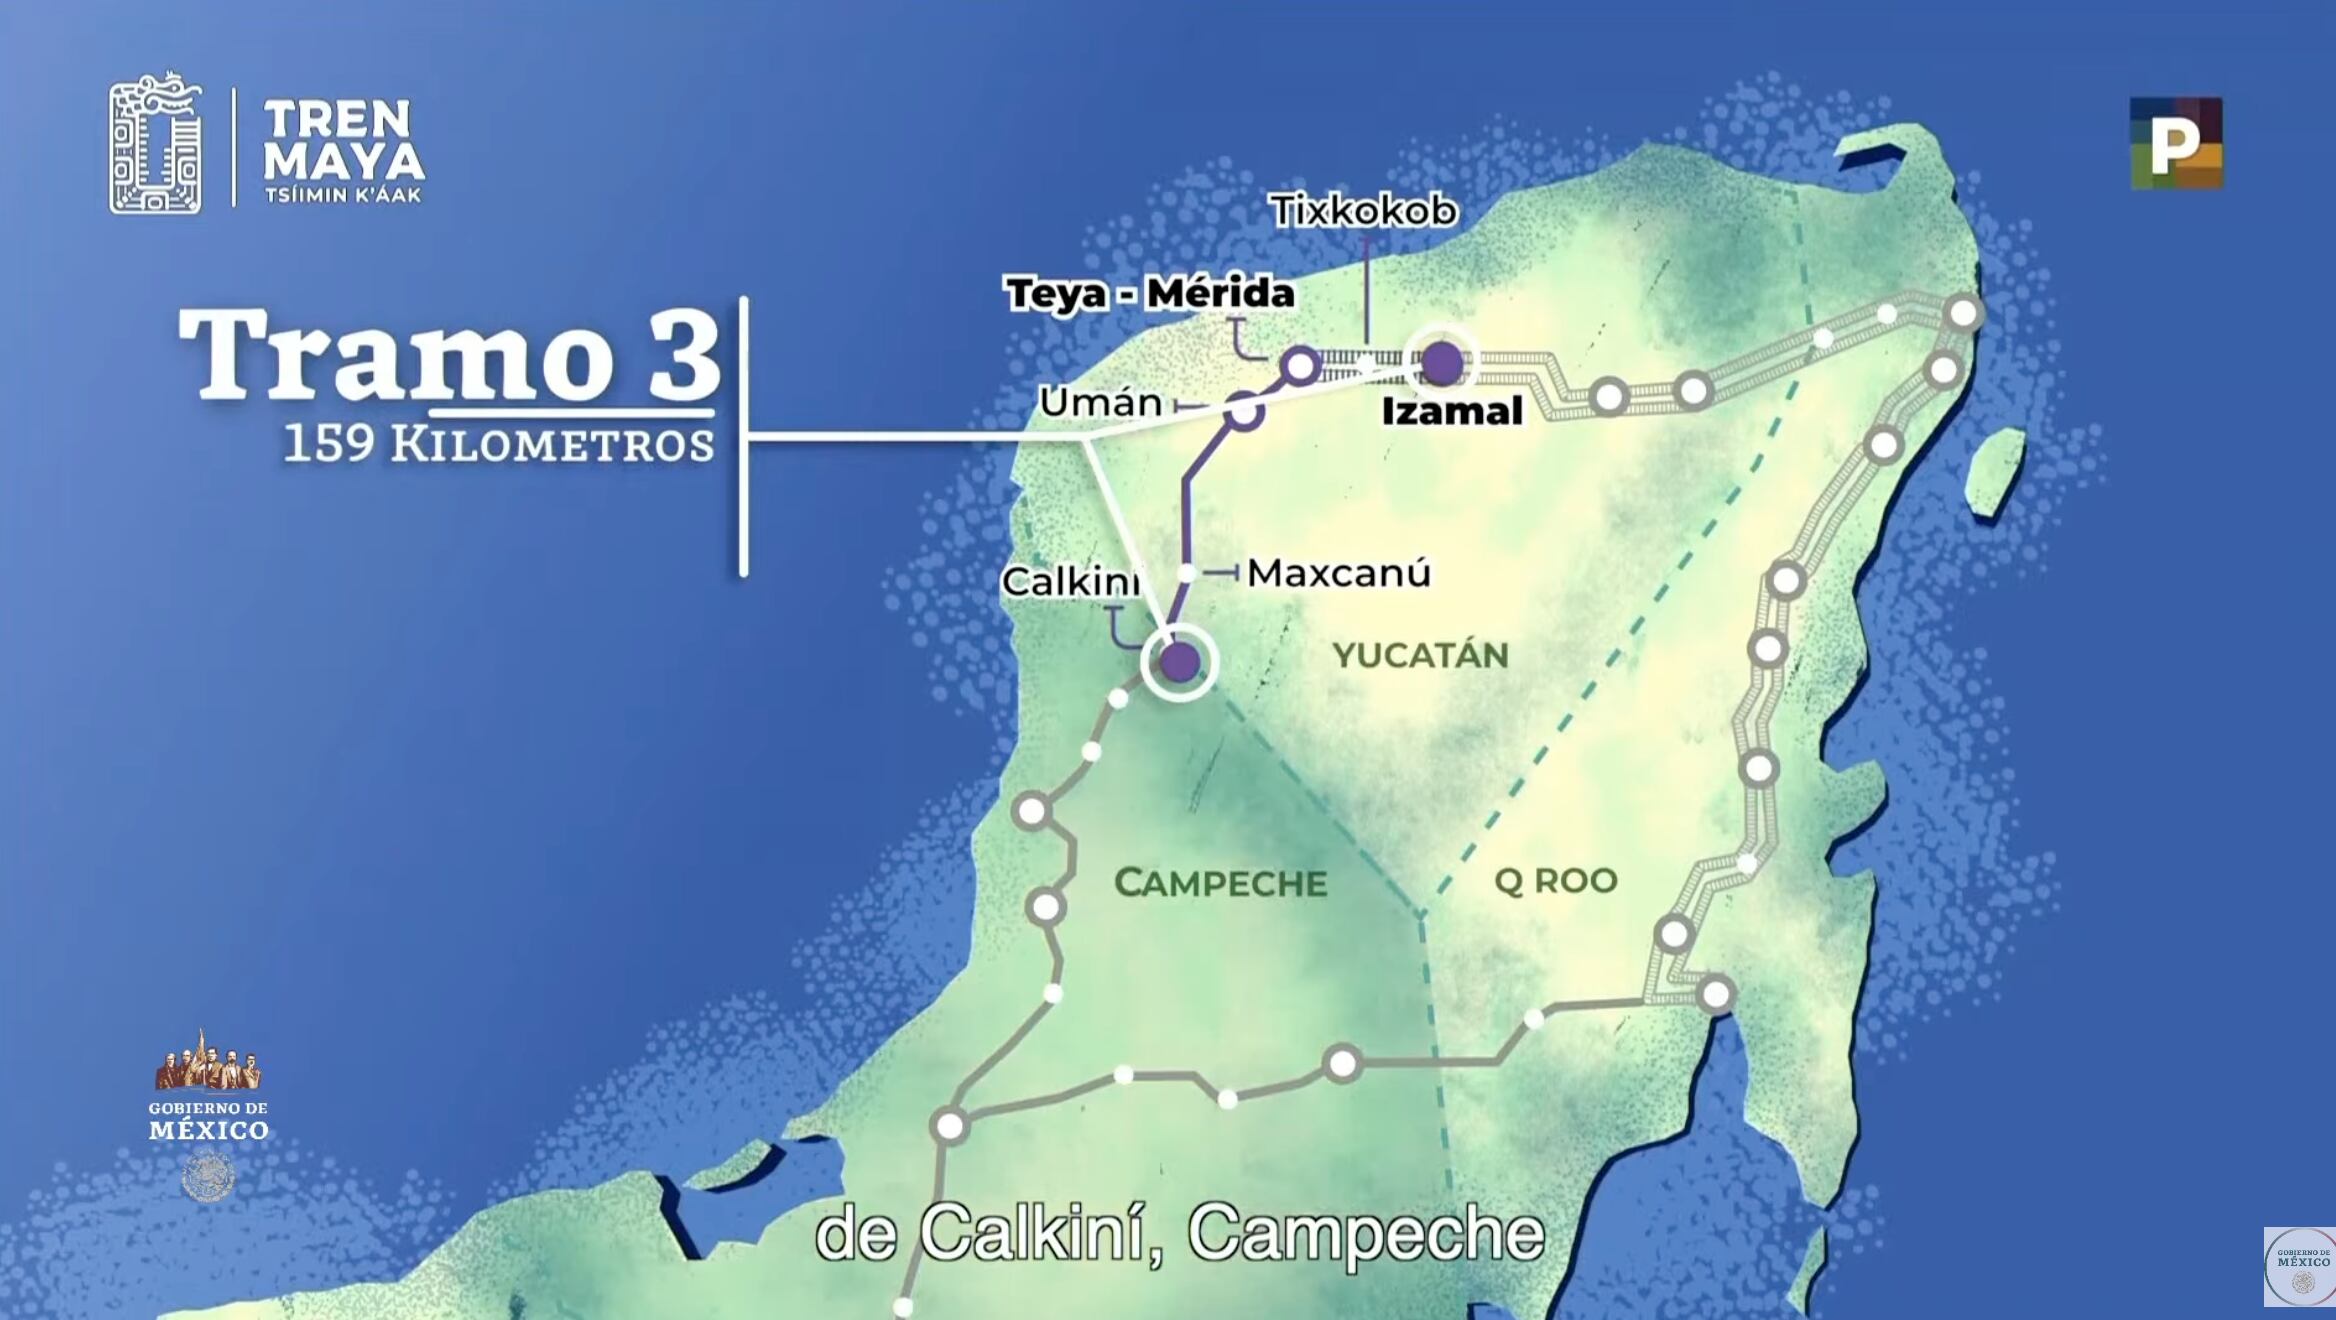 el Tramo 3 del Tren Maya corre de Calkiní a Izamal y cuenta con más de 150 kilómetros de vía.